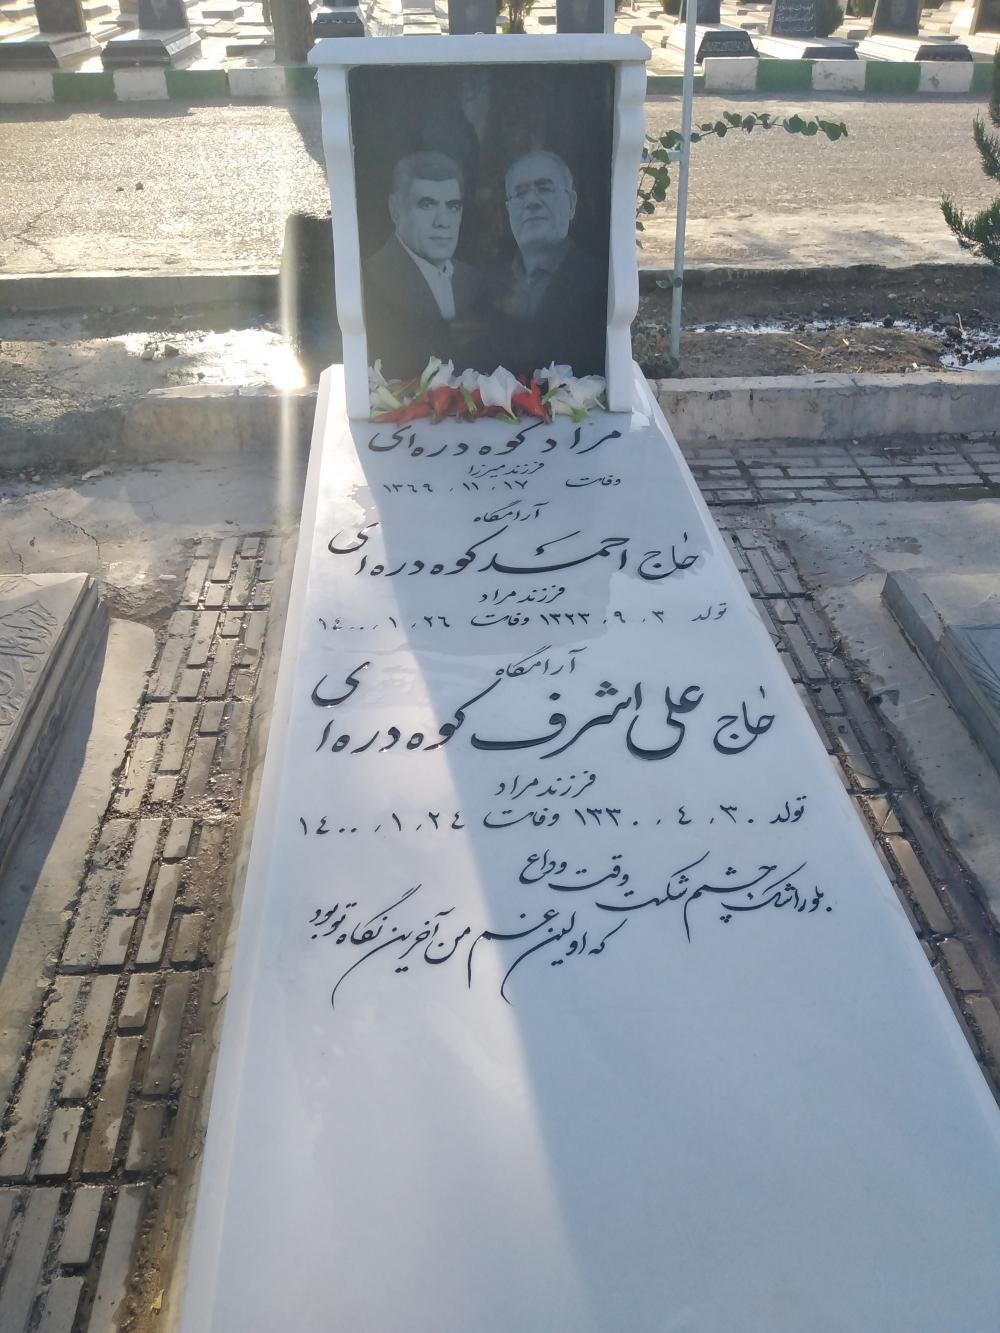 یادبود مرحومان اخوان کوه دره ای حاج احمد، حاج علی اشرف, بیژن کوه دره ای